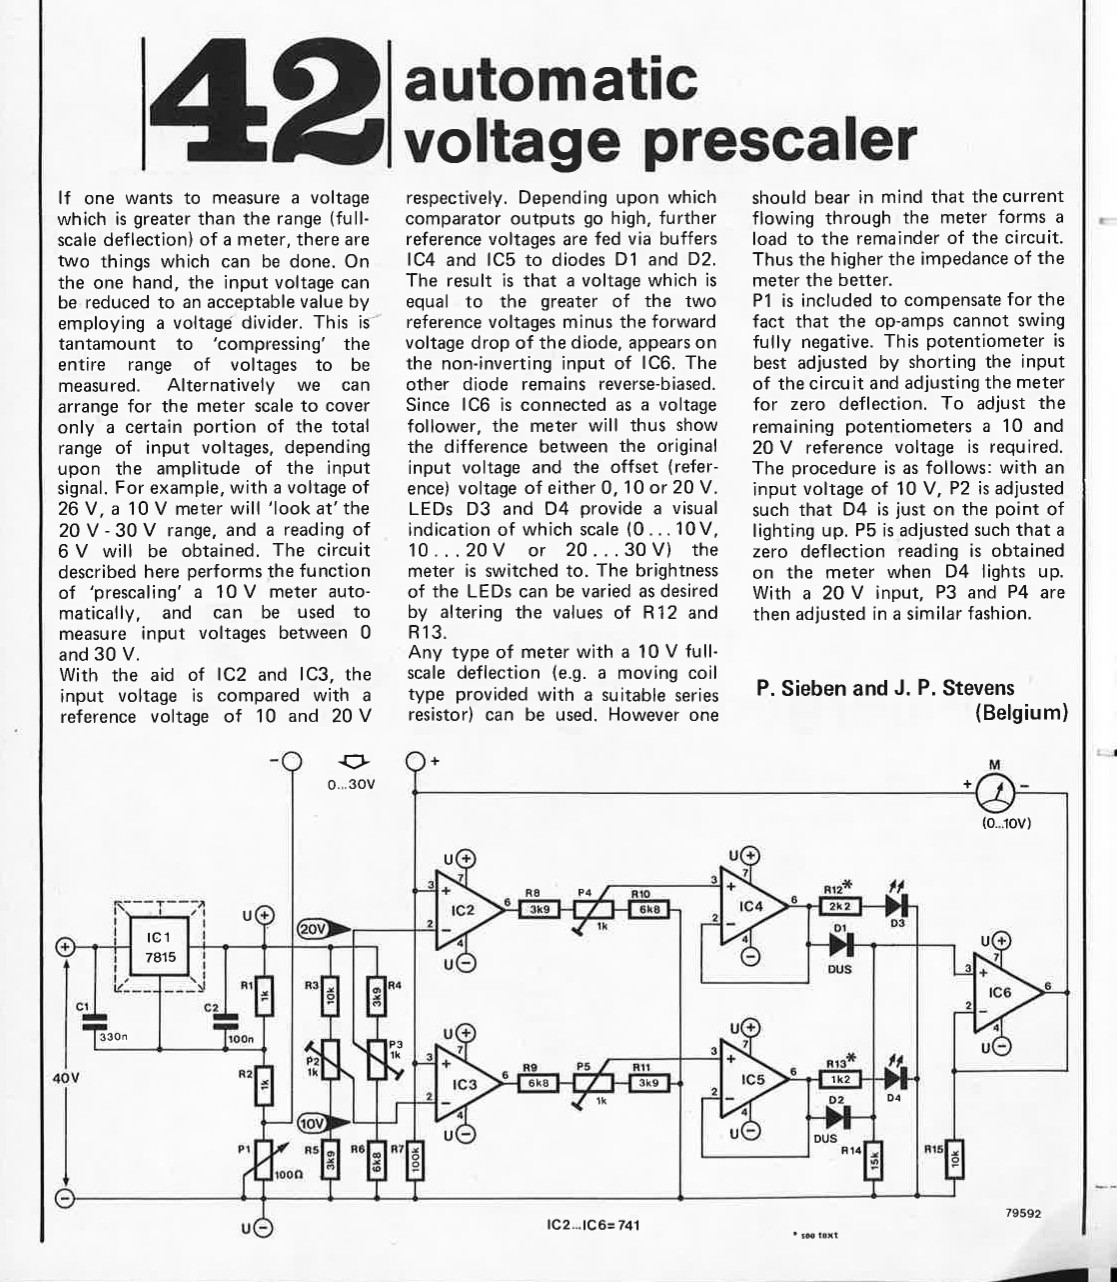 voltage prescaler